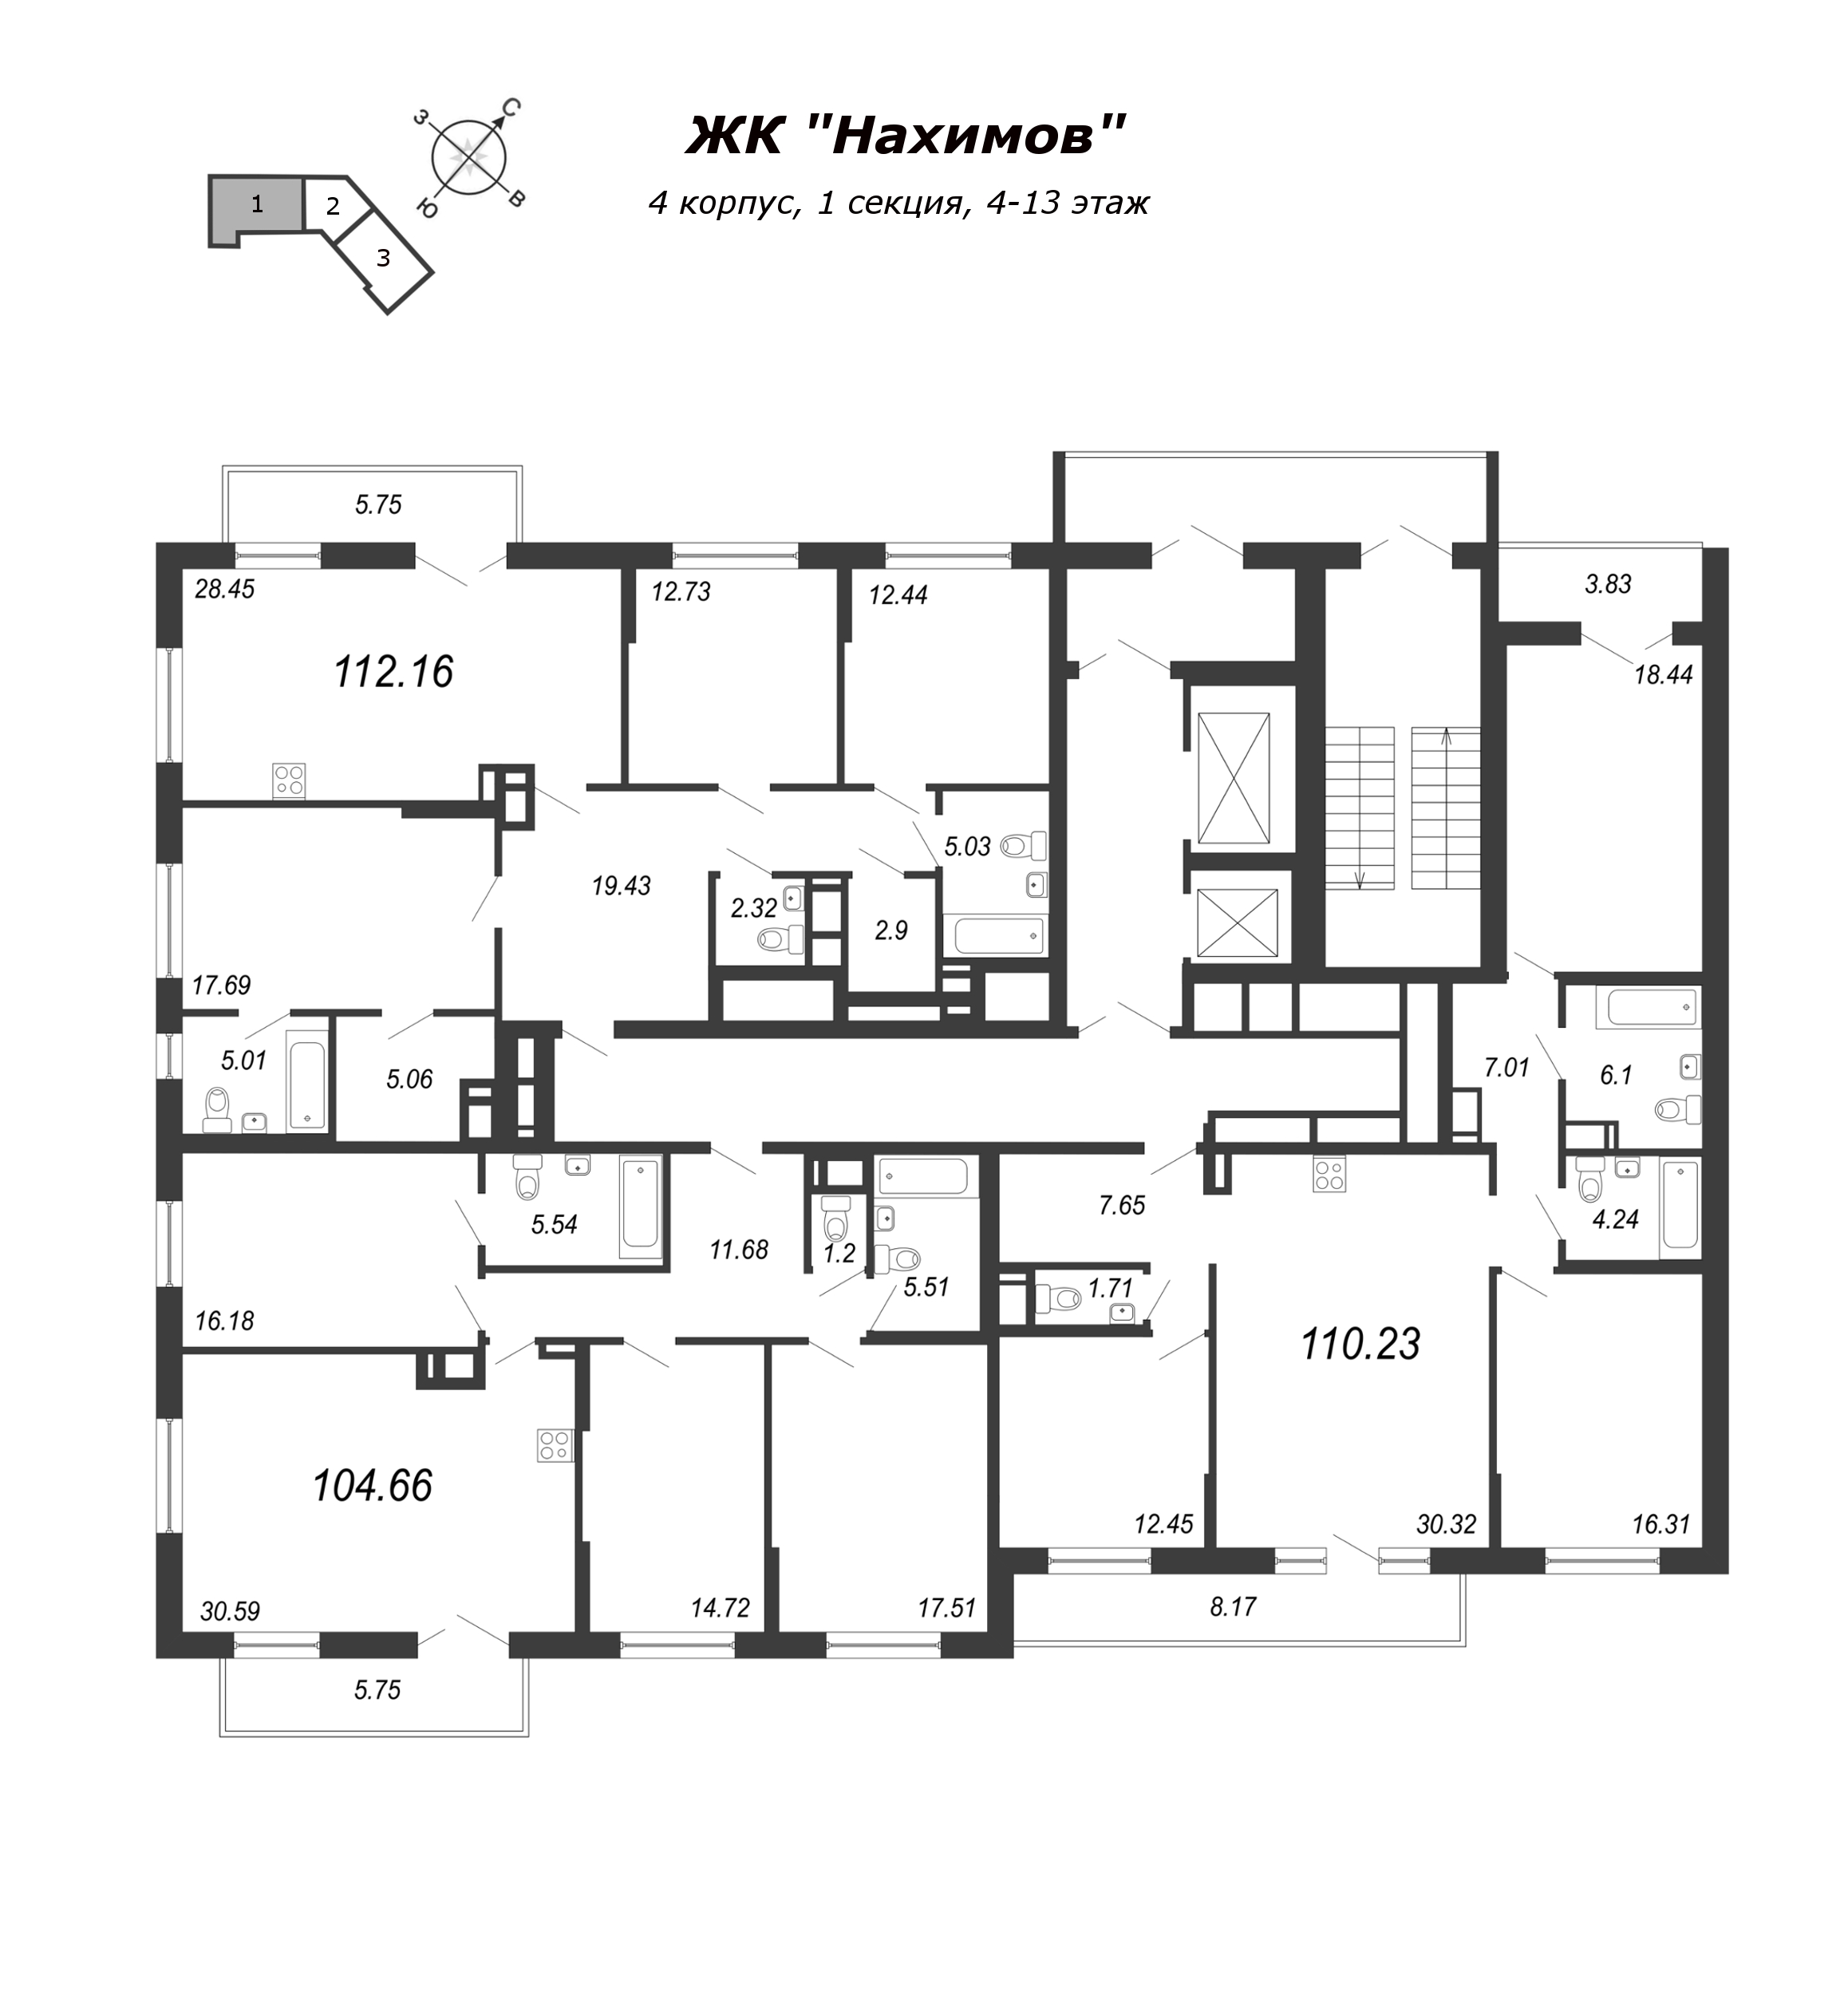 4-комнатная (Евро) квартира, 110.1 м² в ЖК "Нахимов" - планировка этажа